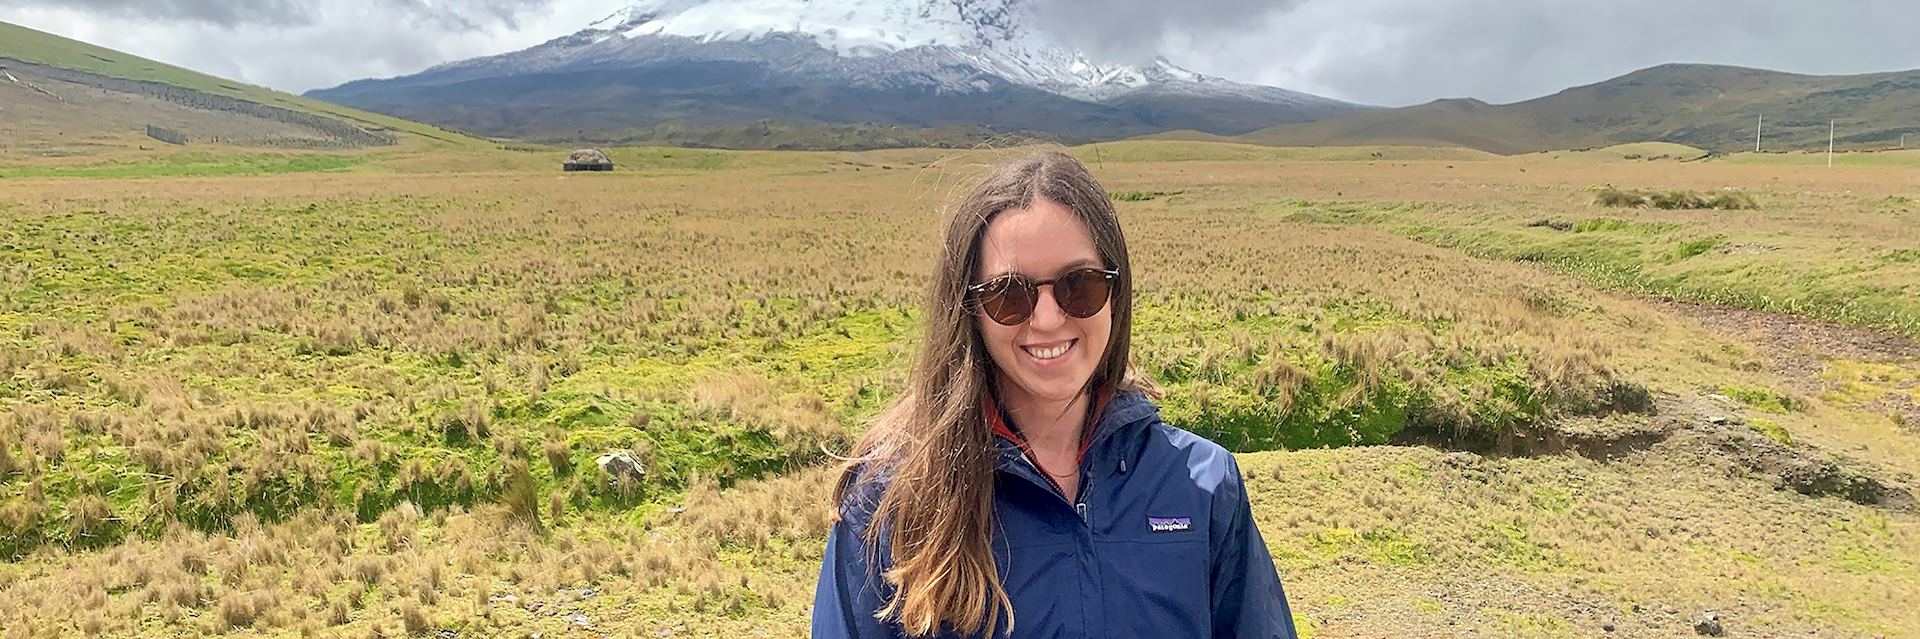 Laura at Volcano Antisana, Ecuador